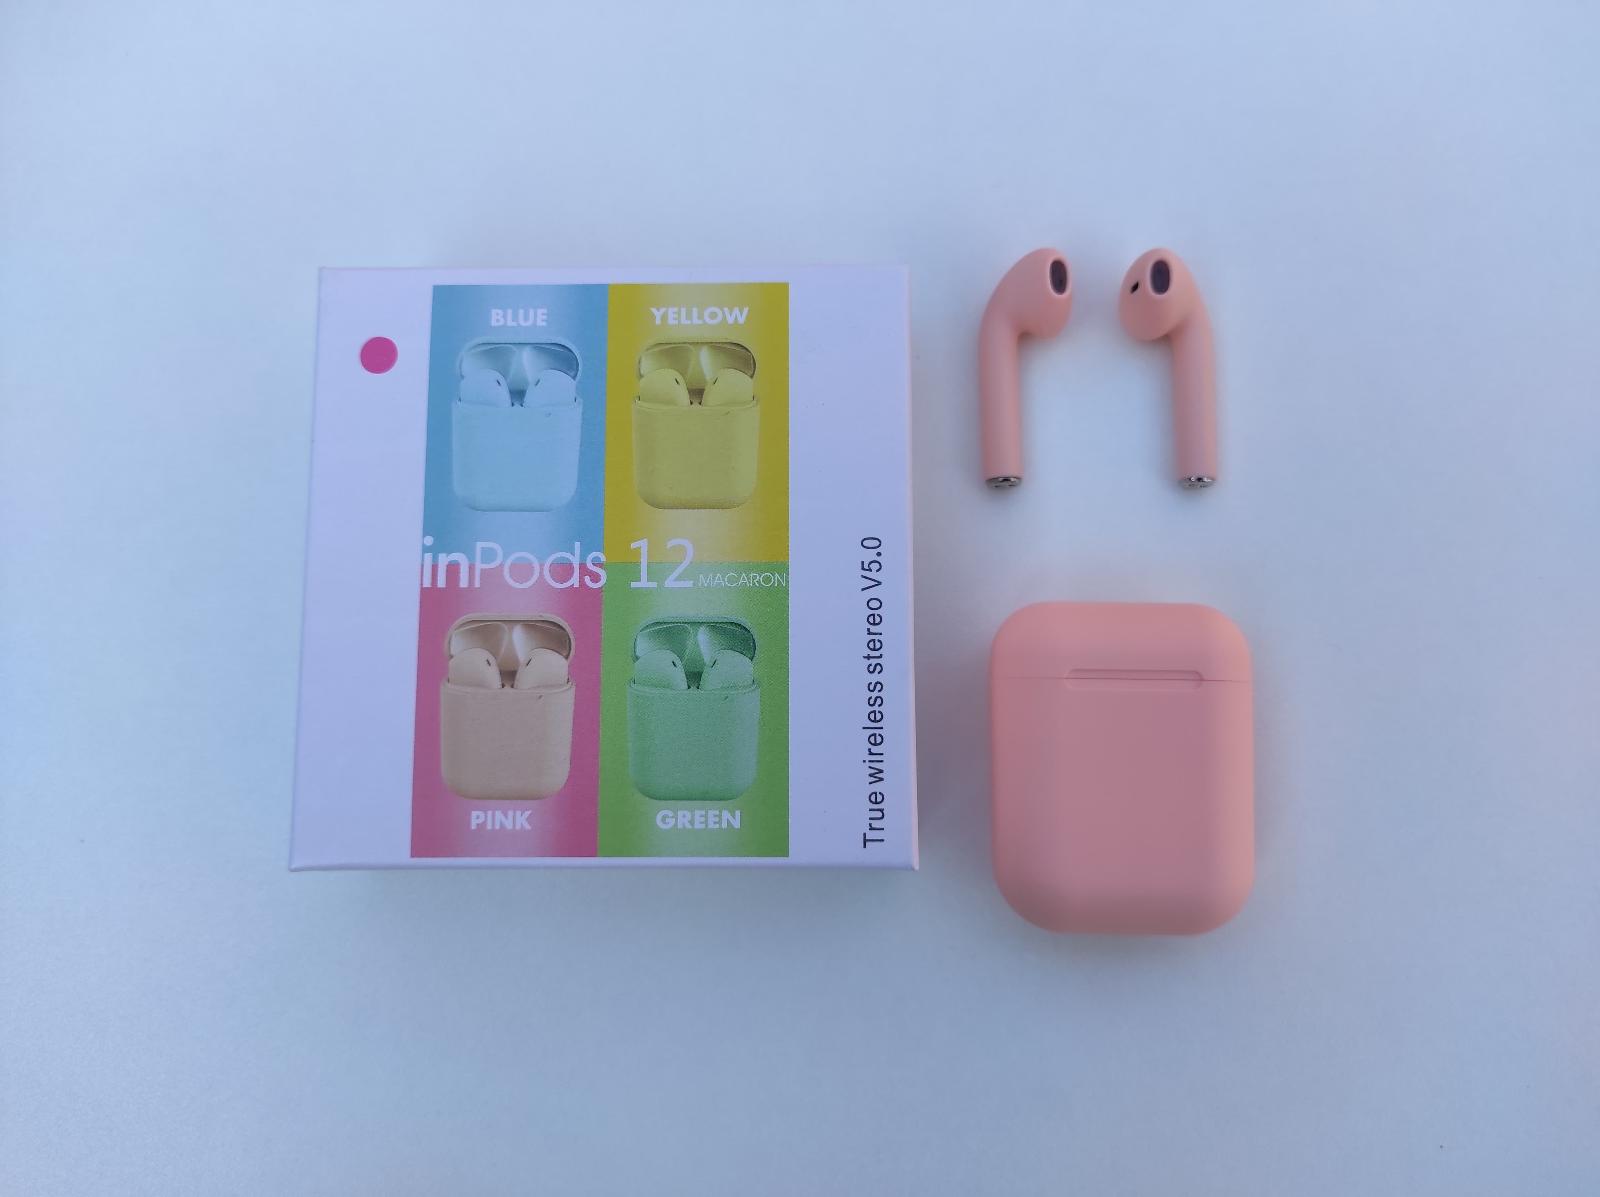 Nová růžová bezdrátová sluchátka bluetooth Inpods 12 pro Android a iOS - Mobily a chytrá elektronika